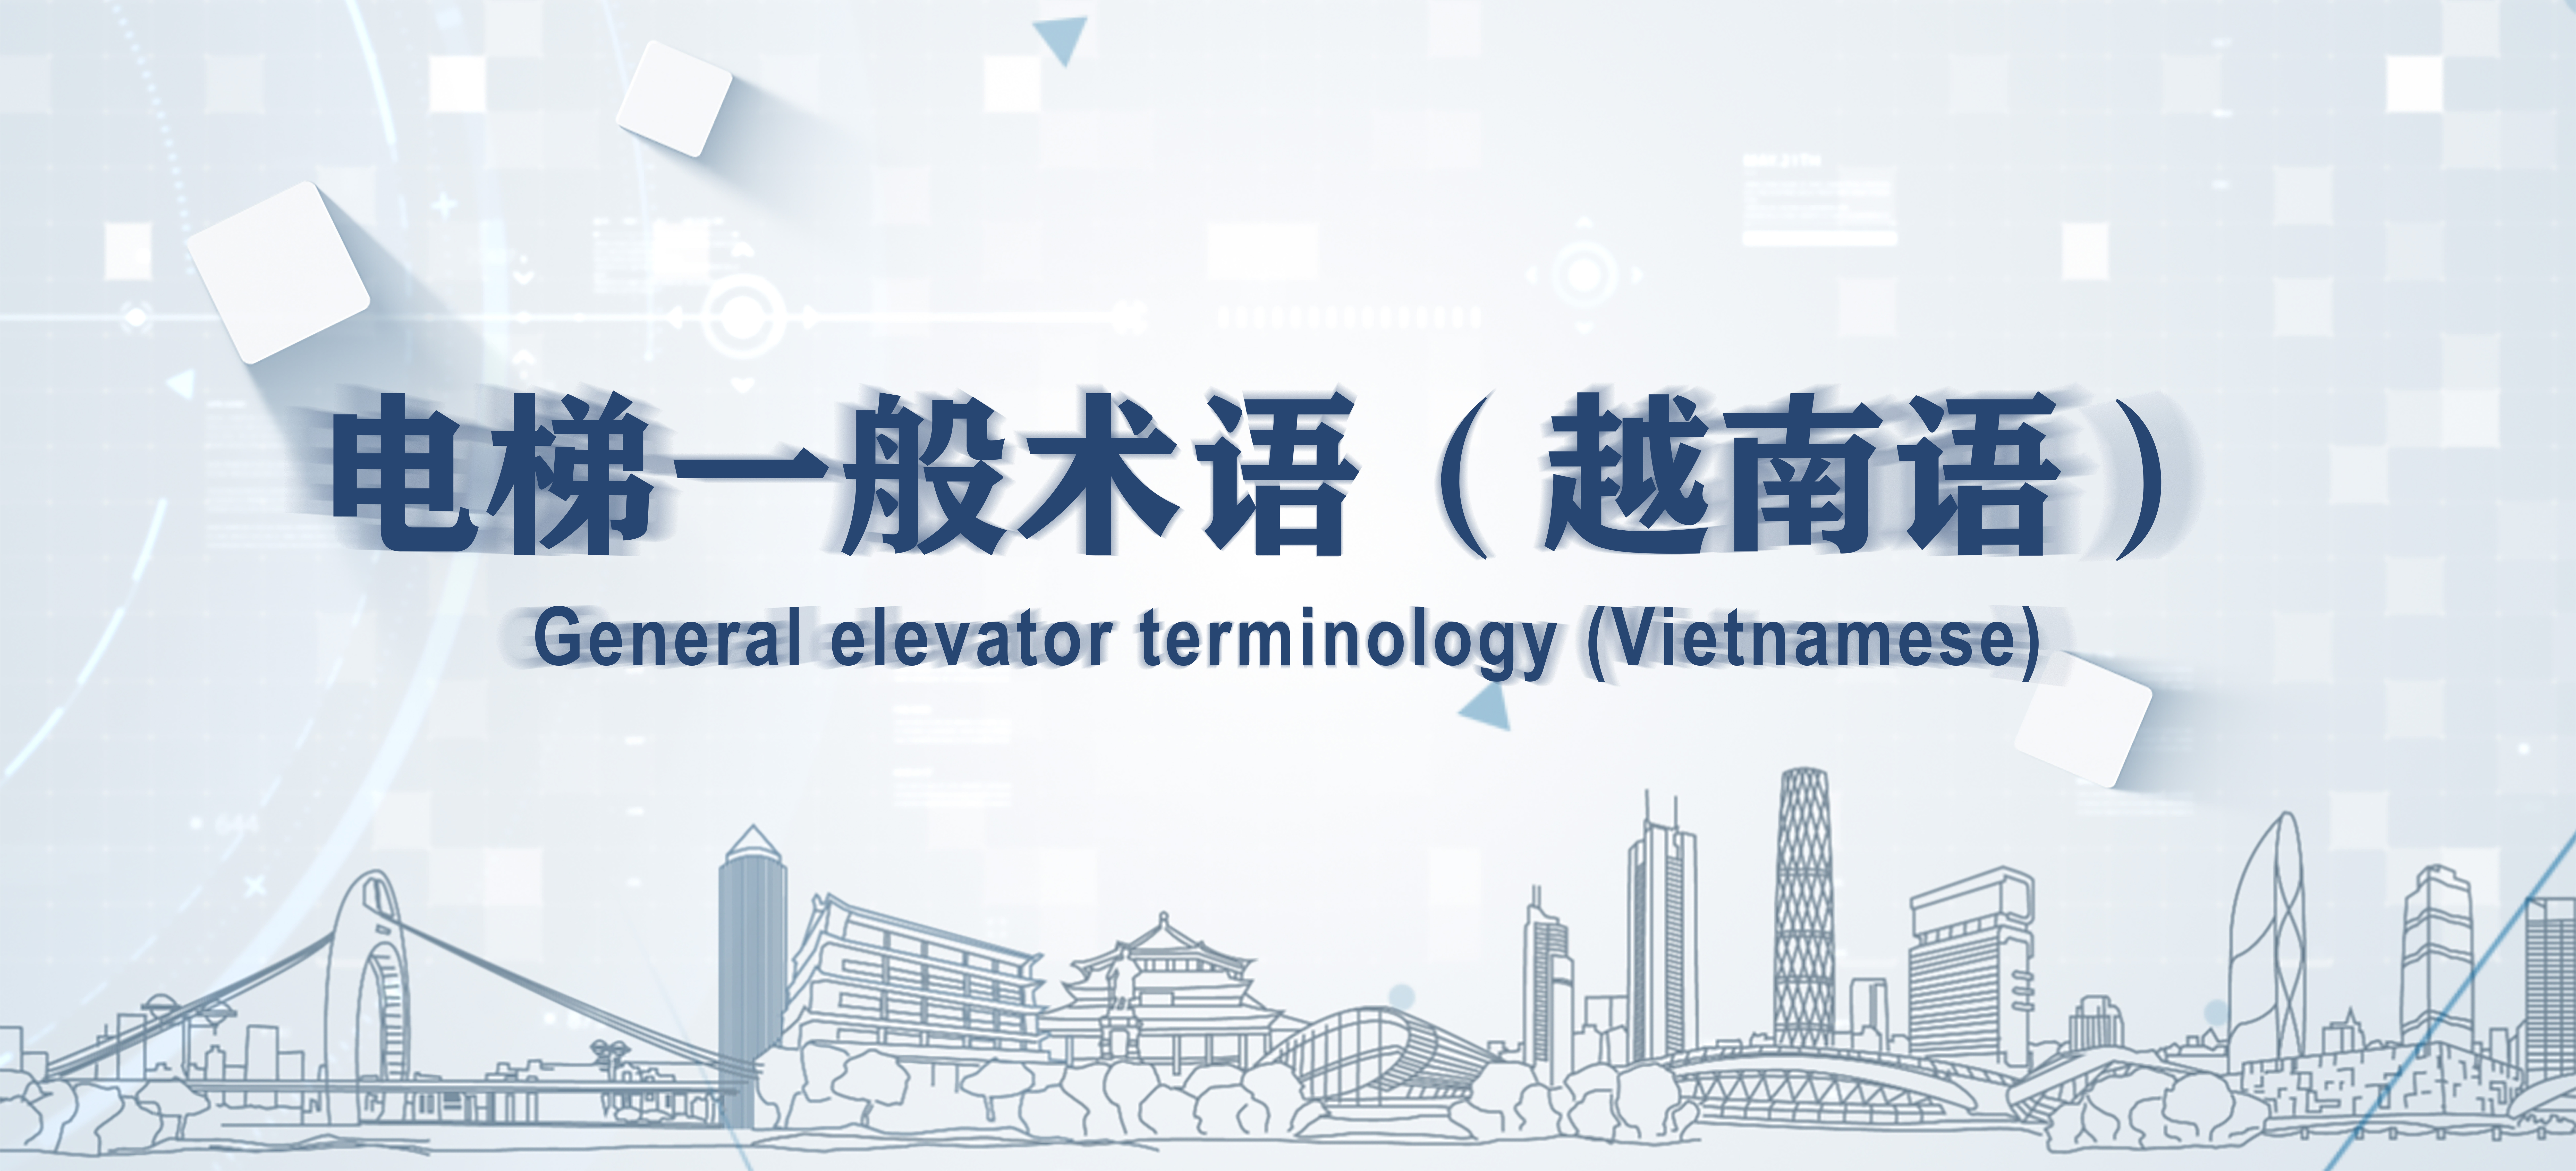 General elevator terminology (Vietnamese)